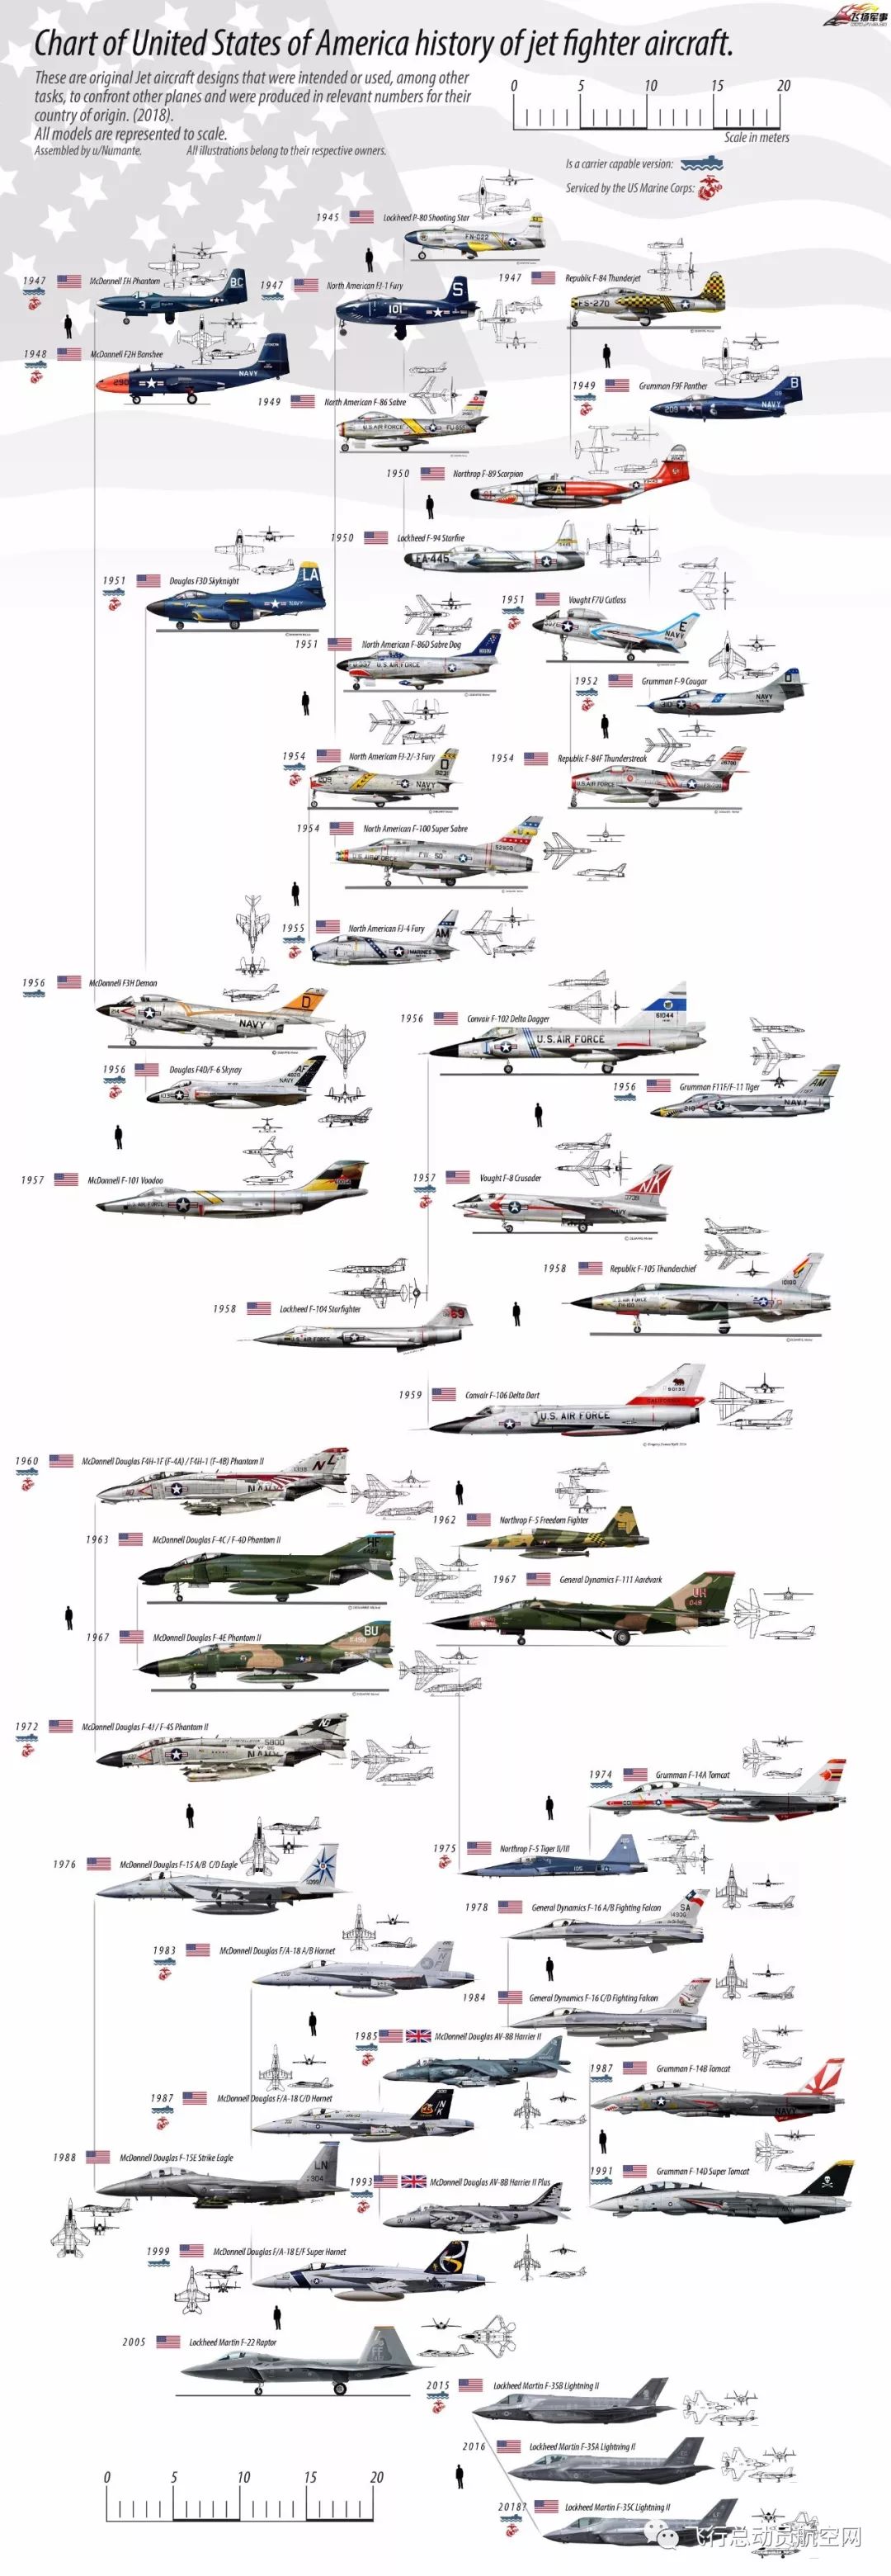 一张图看完美国喷气战斗机发展历程!